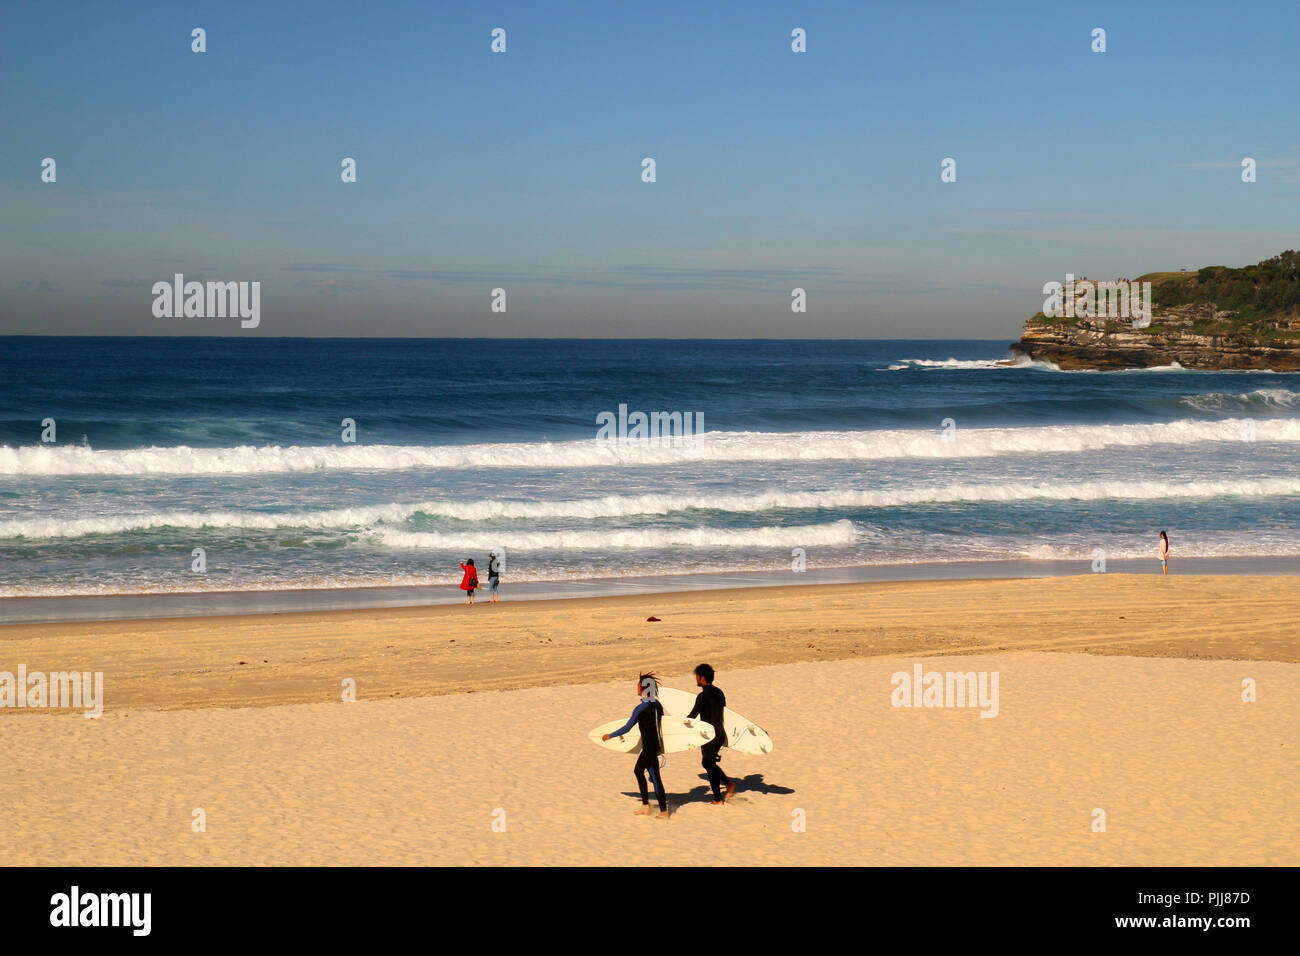 Natürliche Sandstrand in Sydney, riesige Wellen und zwei Surfer gehen mit ihren Surf zum Wasser, Pazifischer Ozean, Bondi Beach in Australien Stockfoto